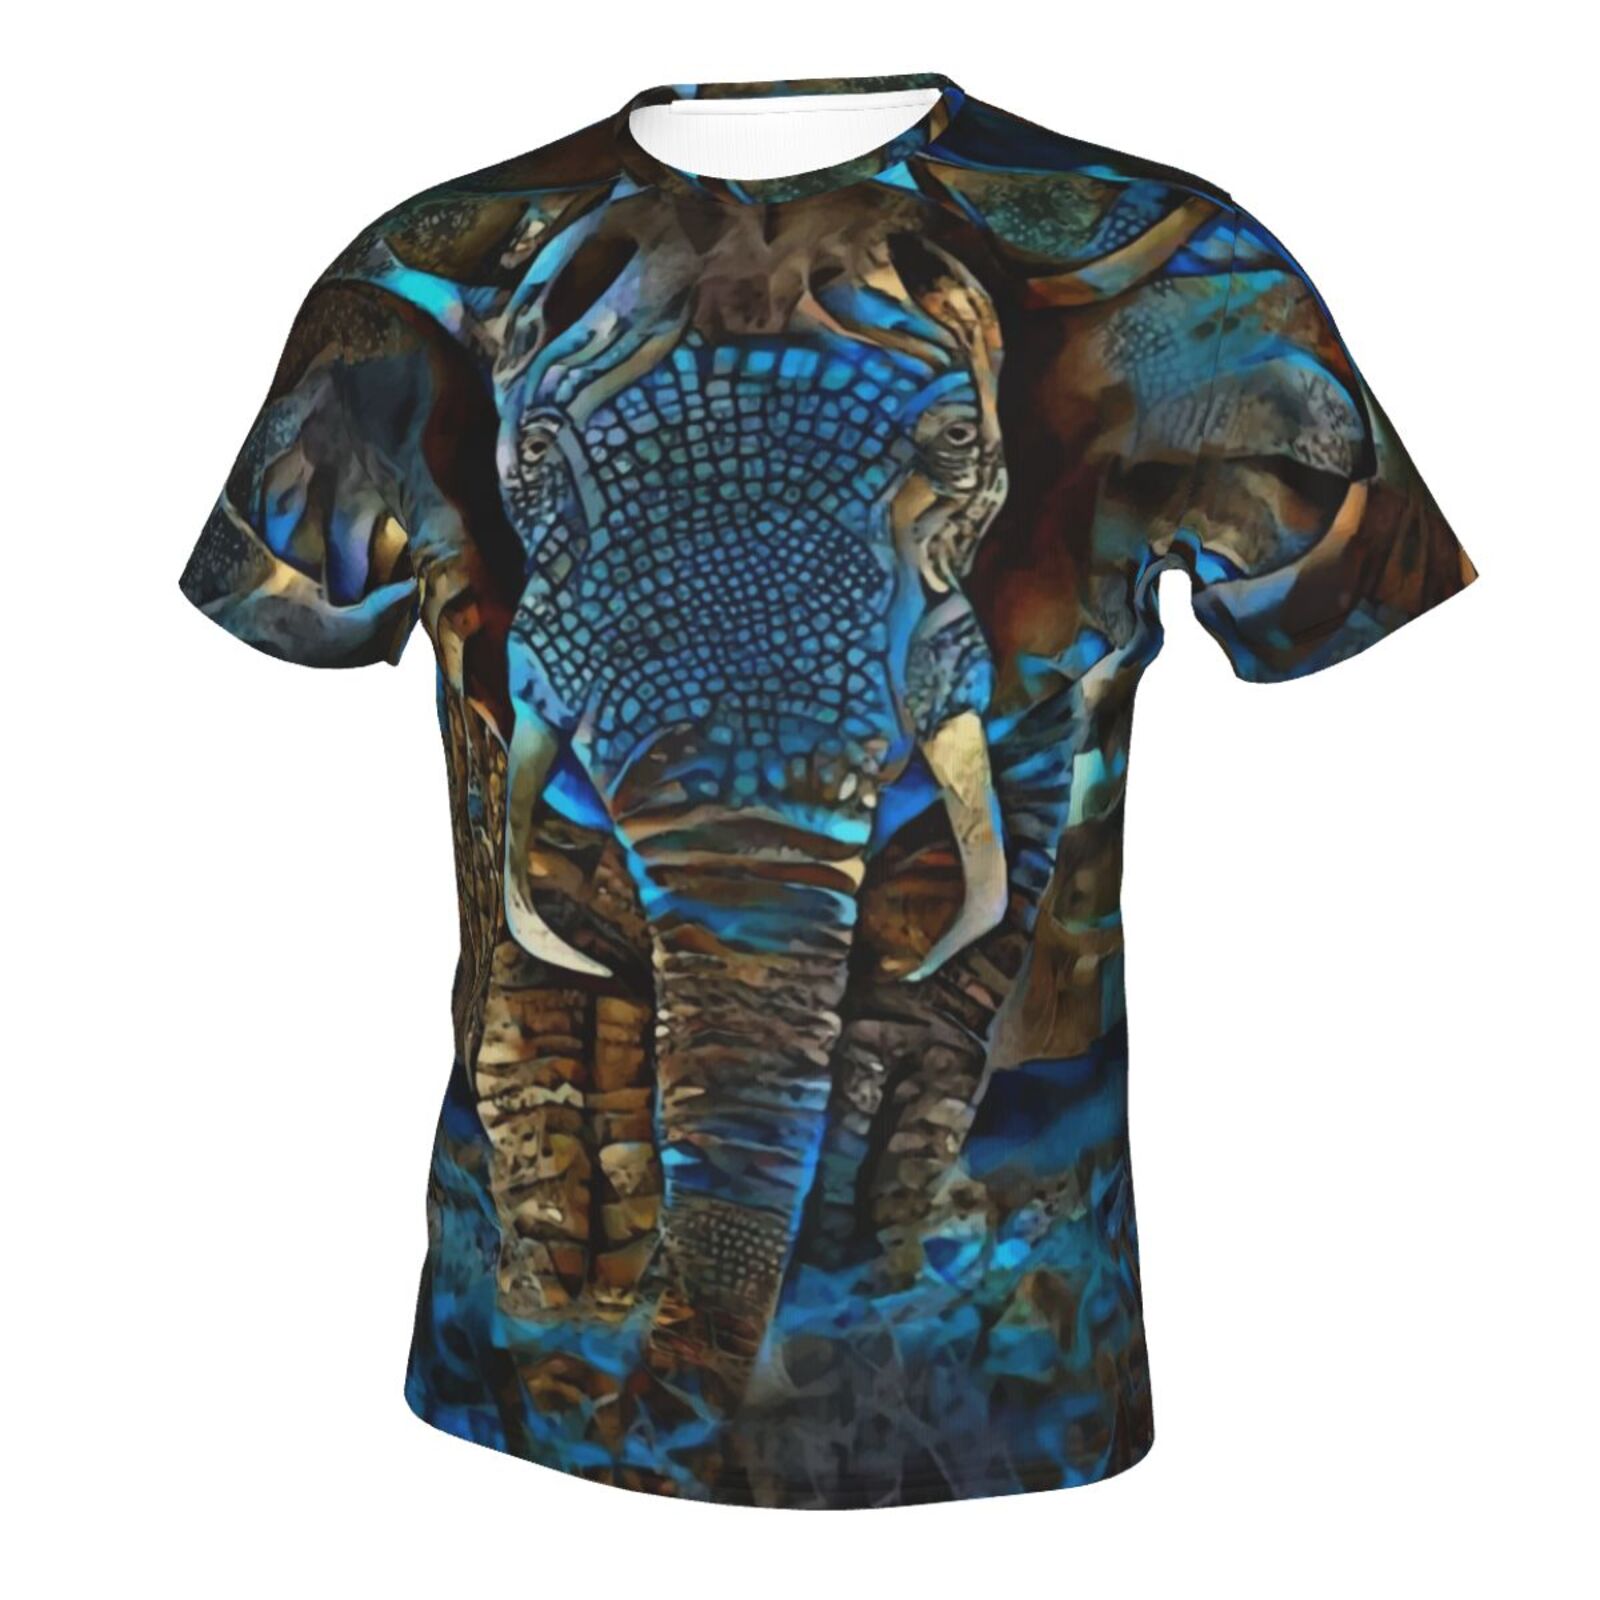 Elefant Braun Blau Medien Mischen Elemente Klassisch Schweiz T-shirt